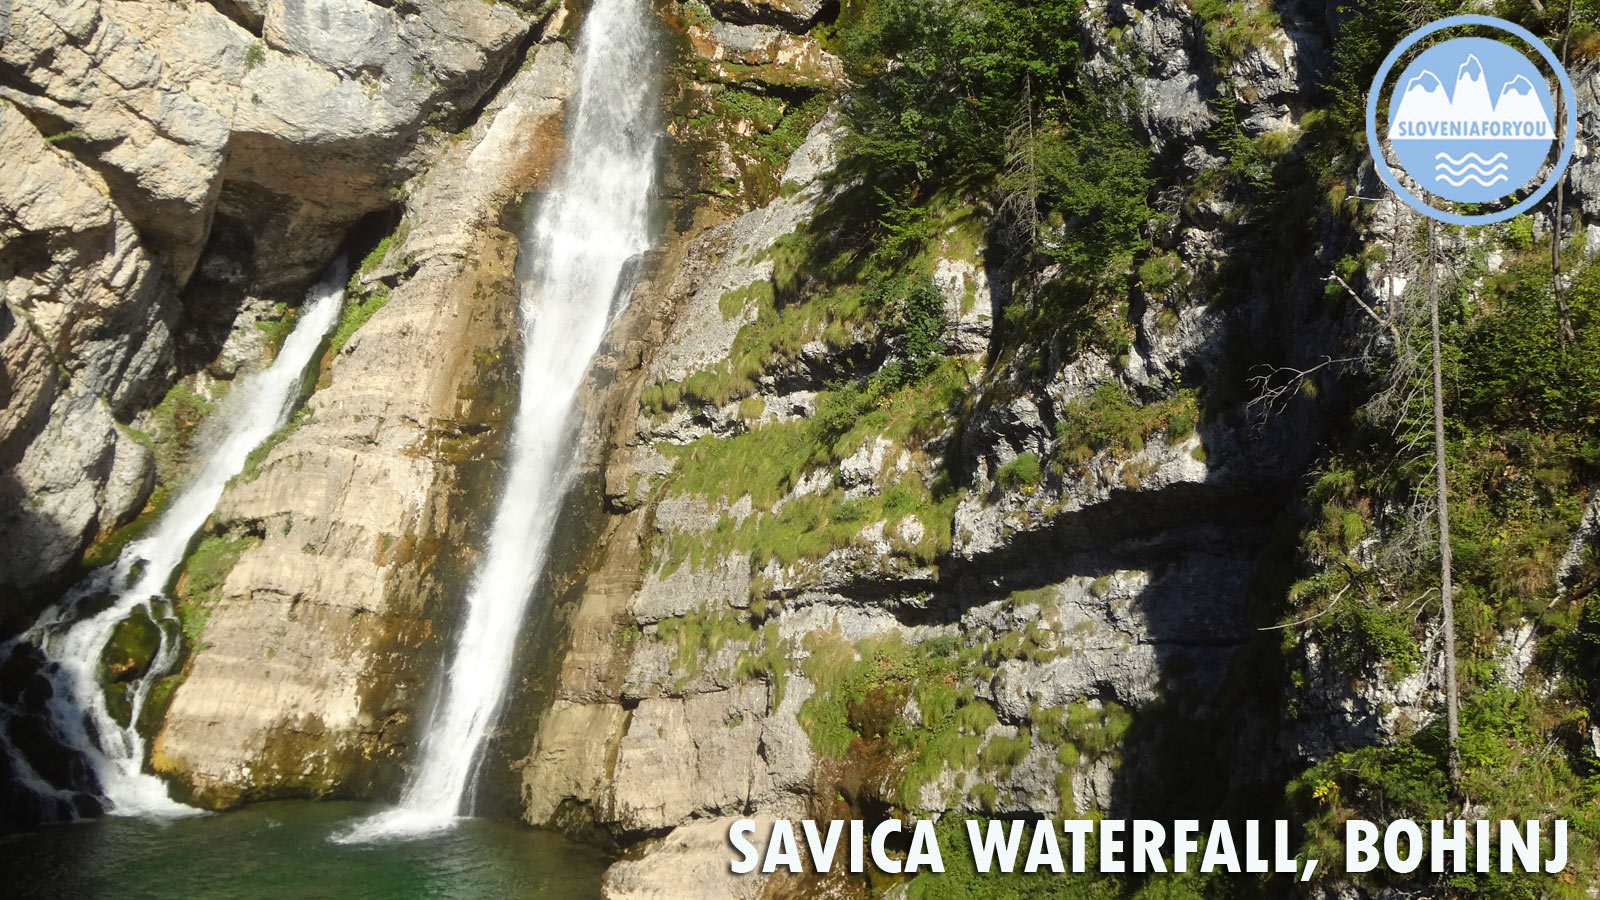 Savica Waterfall Lake Bohinj_Sloveniaforyou